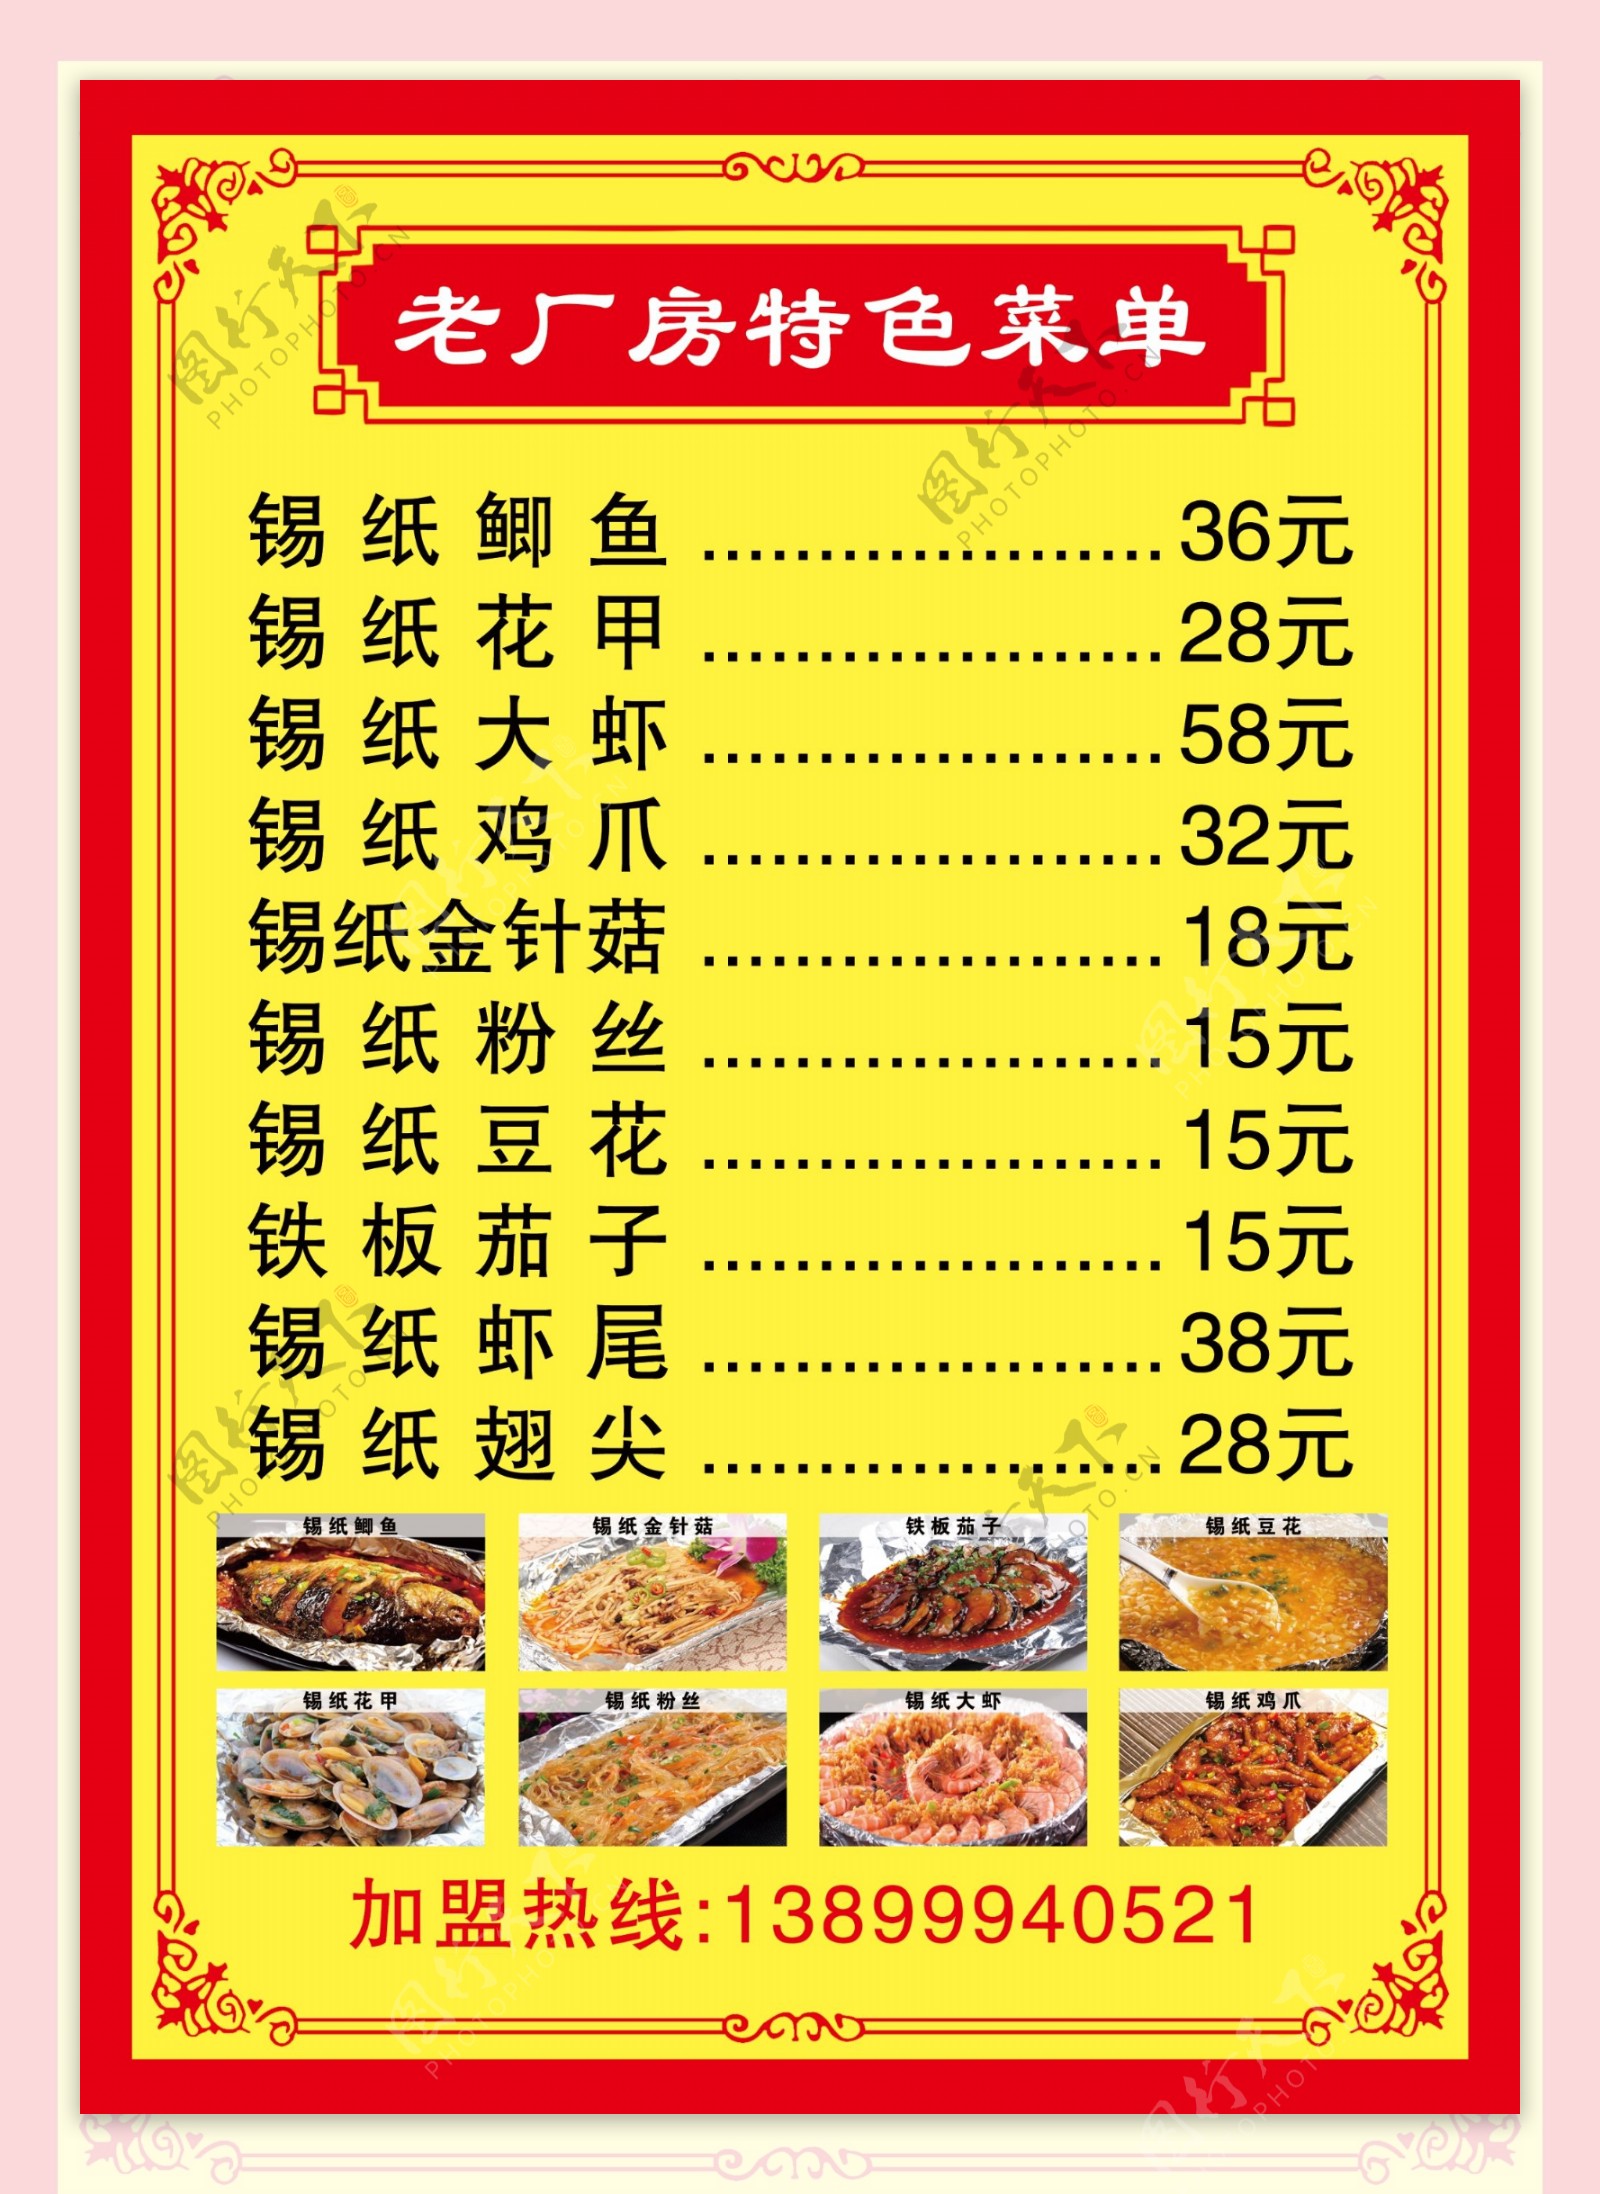 菜单菜谱价格表餐厅中餐